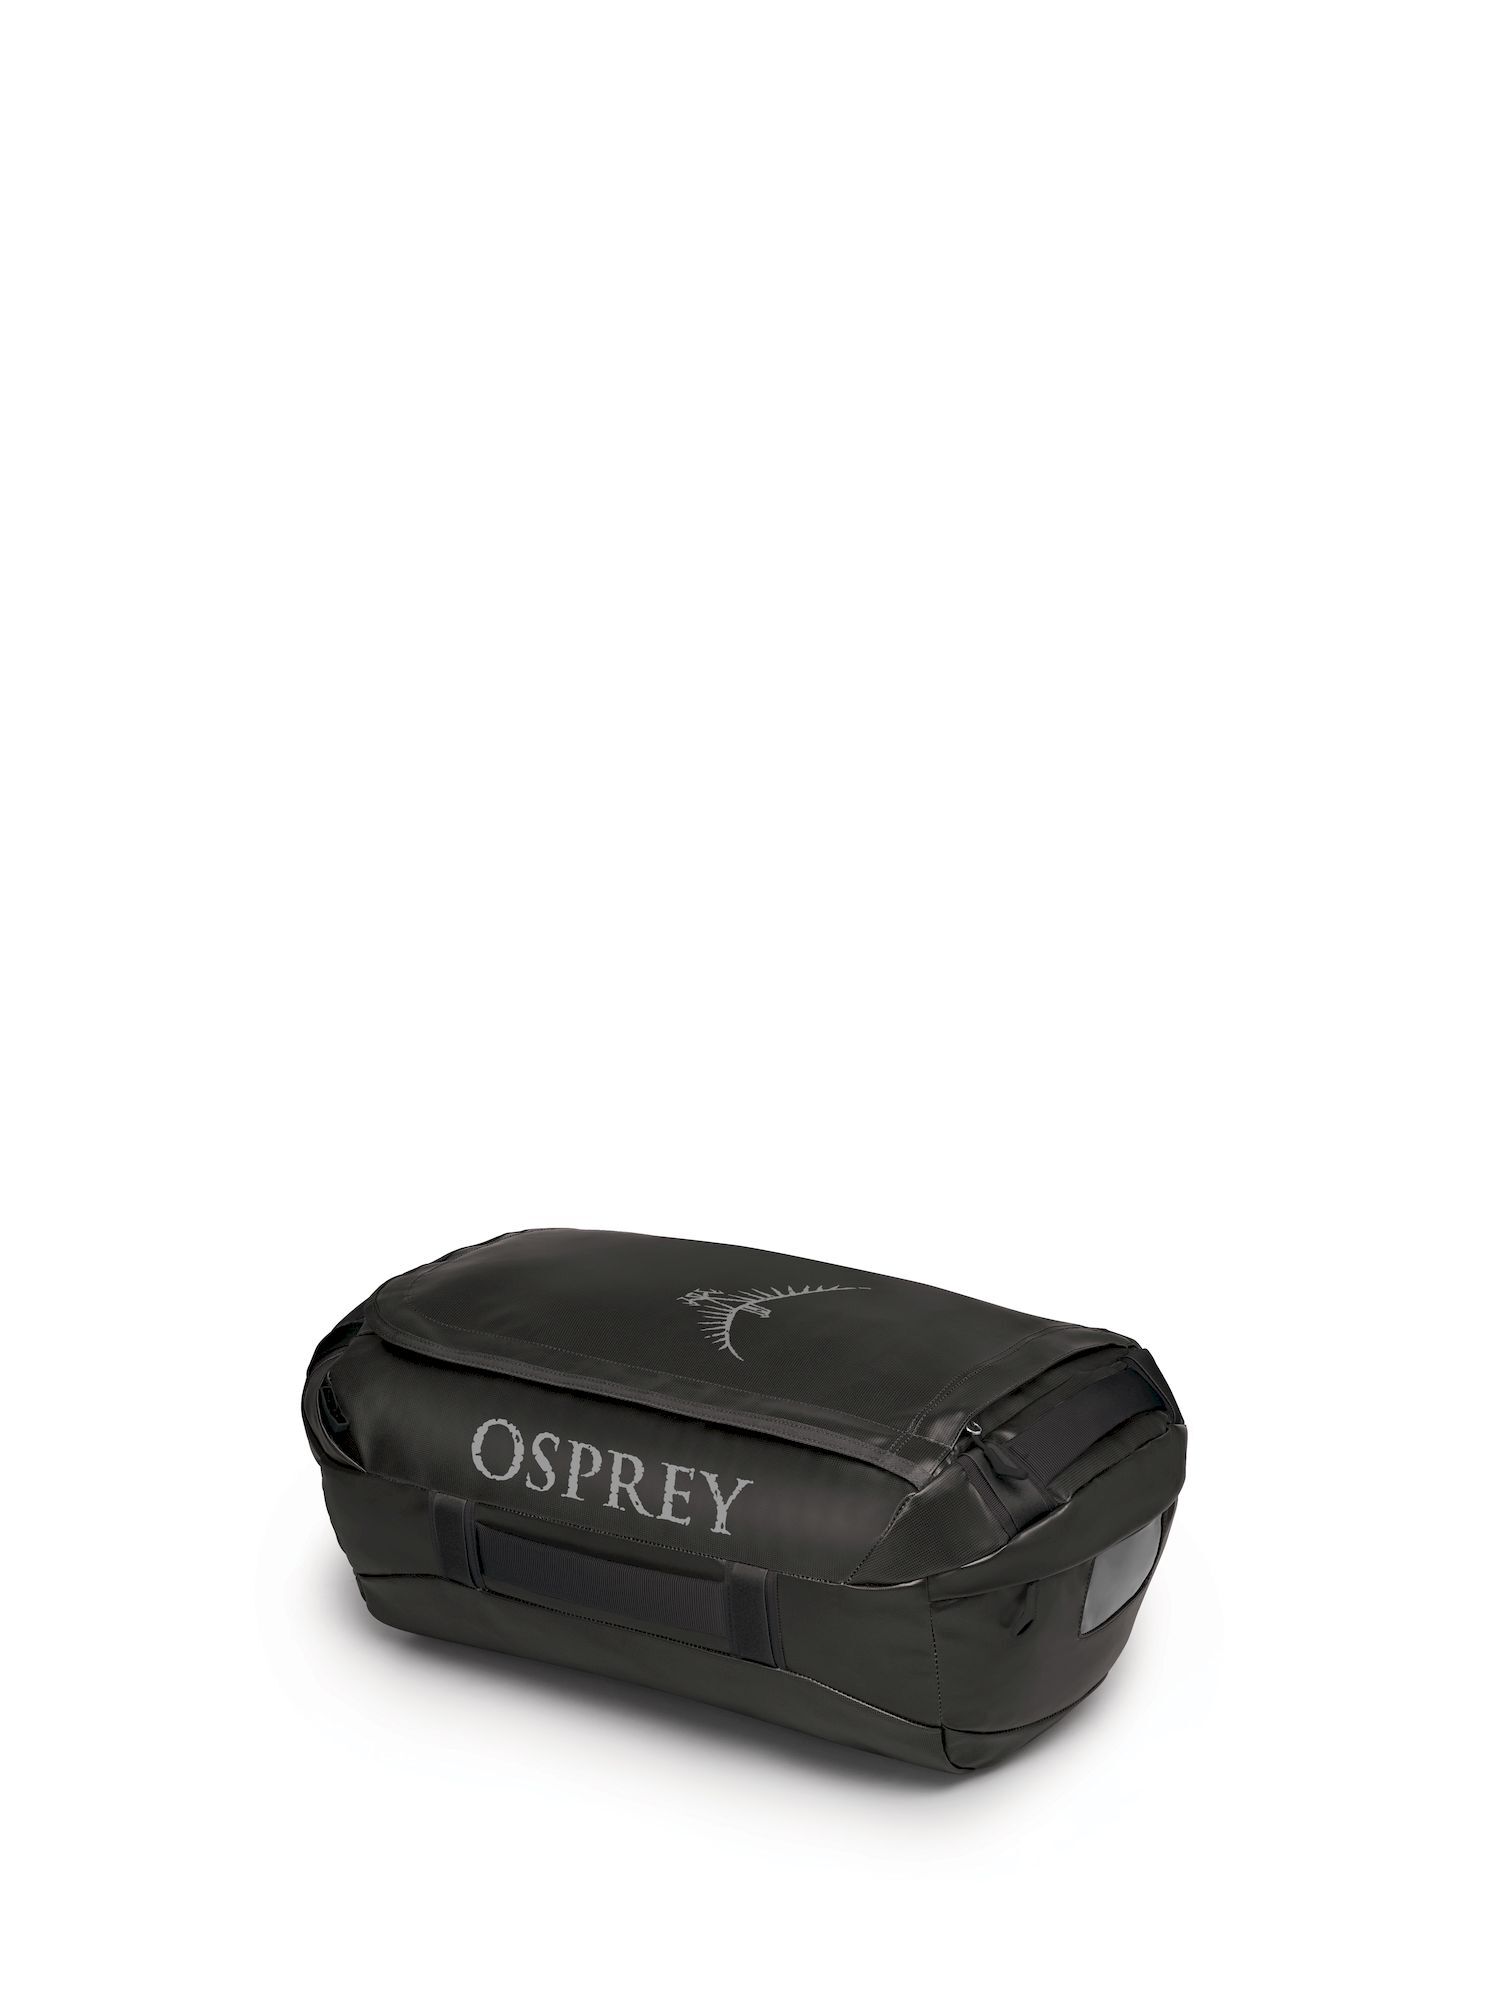 Osprey - Transporter 40 - Travel bag